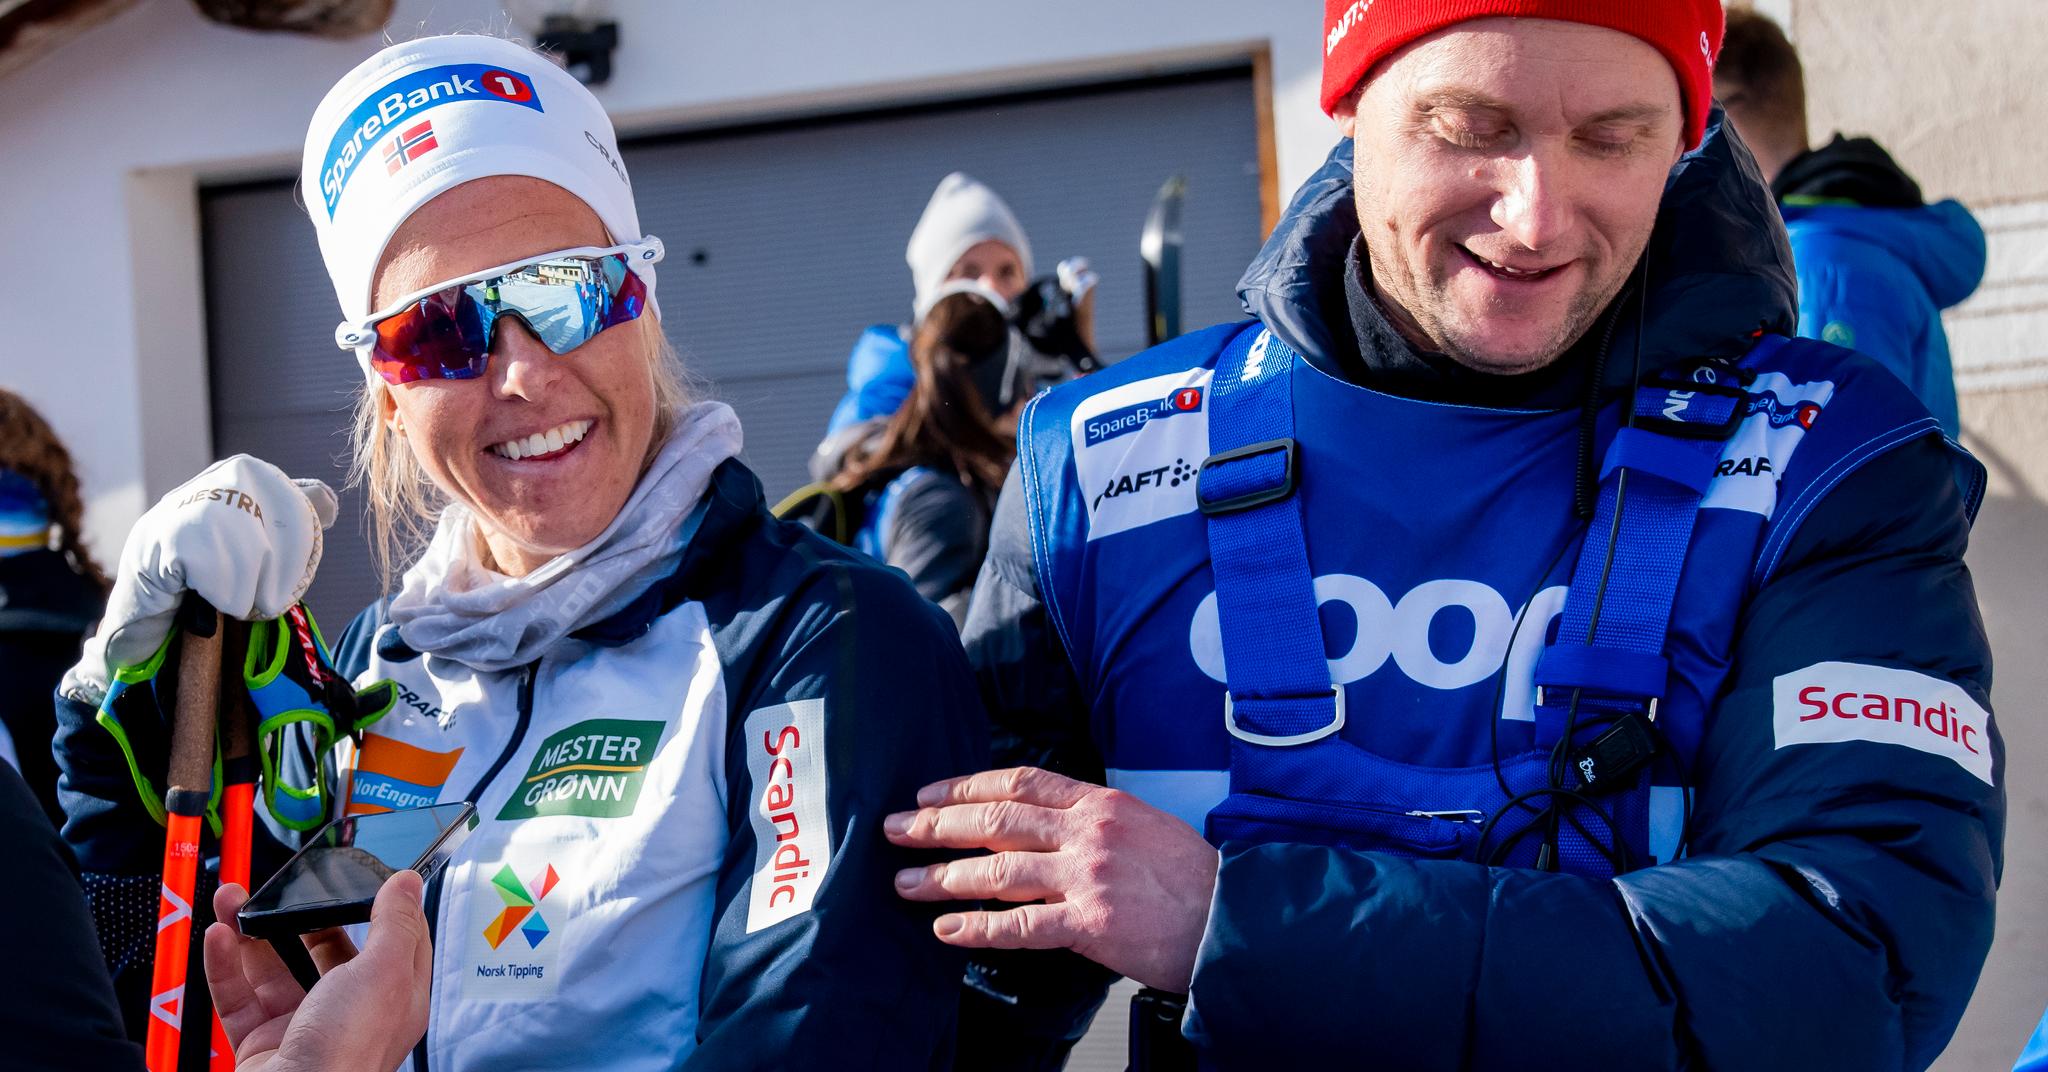 Astrid Øyre Slind gliser for en sterk prestasjon i Val Müstair. Hun roser landslagstrener Sjur Ole Svarstad.